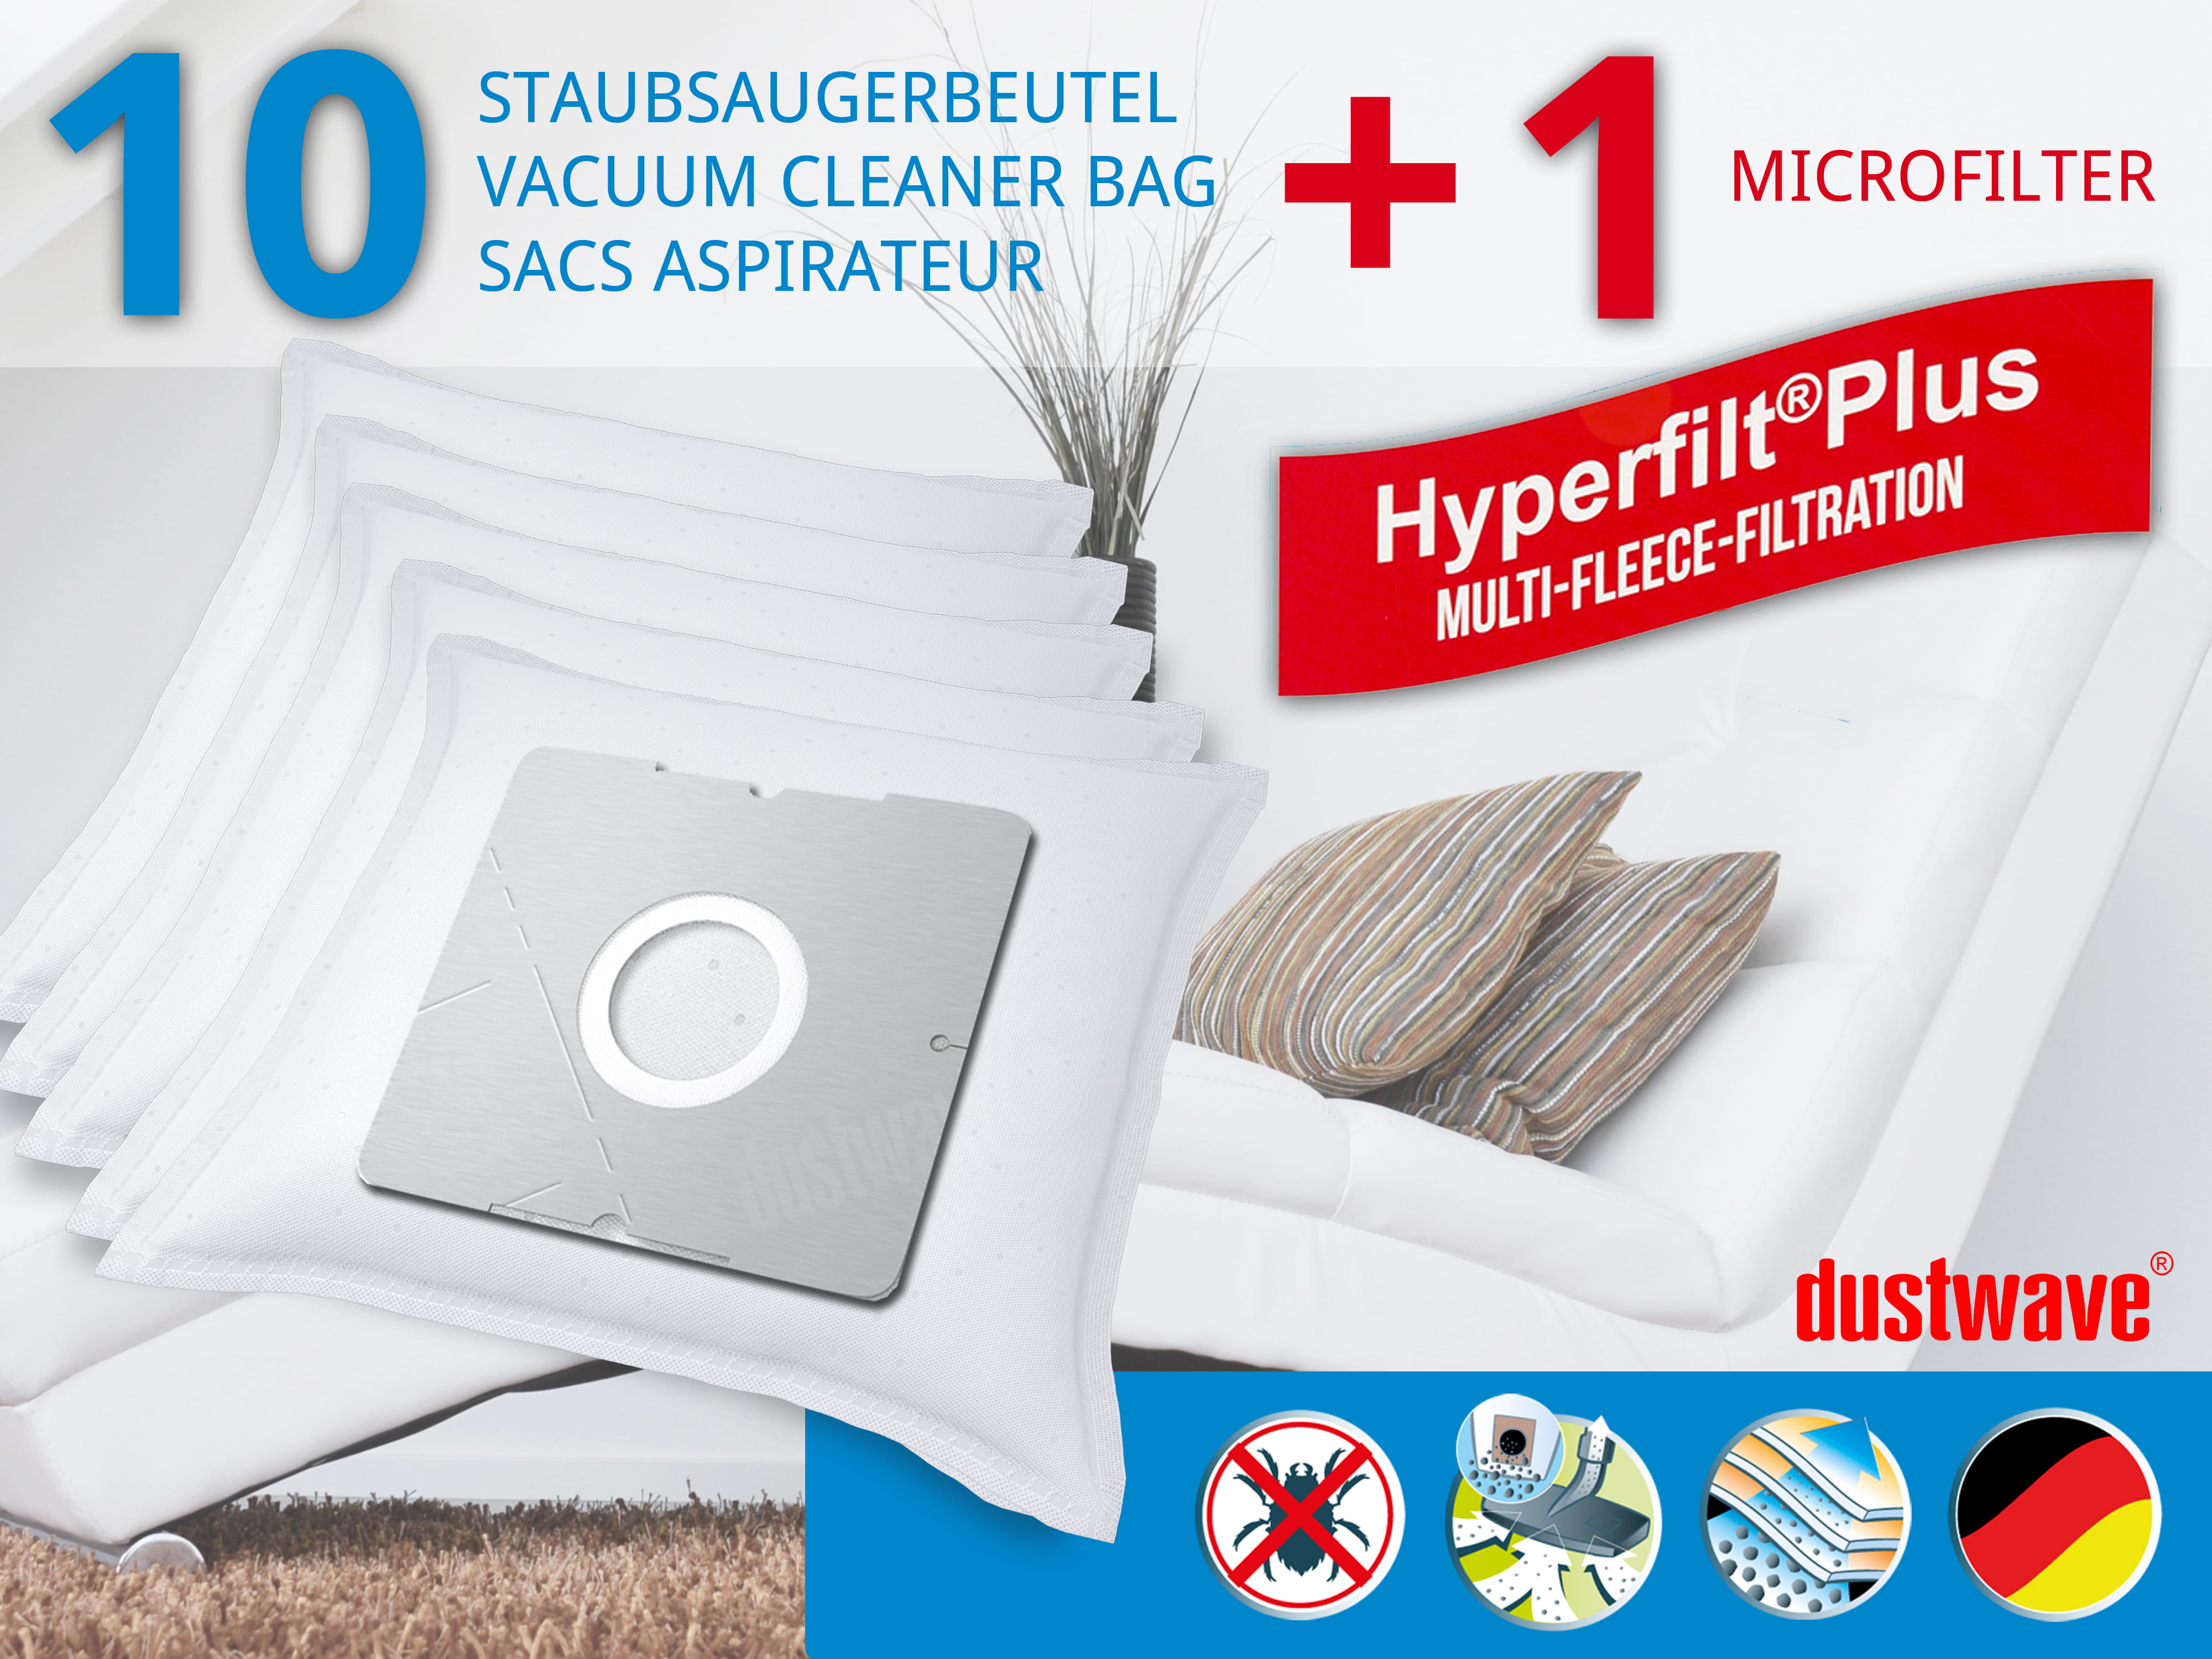 Dustwave® 10 Staubsaugerbeutel für Emerio VE-110452.2 - hocheffizient mit Hygieneverschluss - Made in Germany